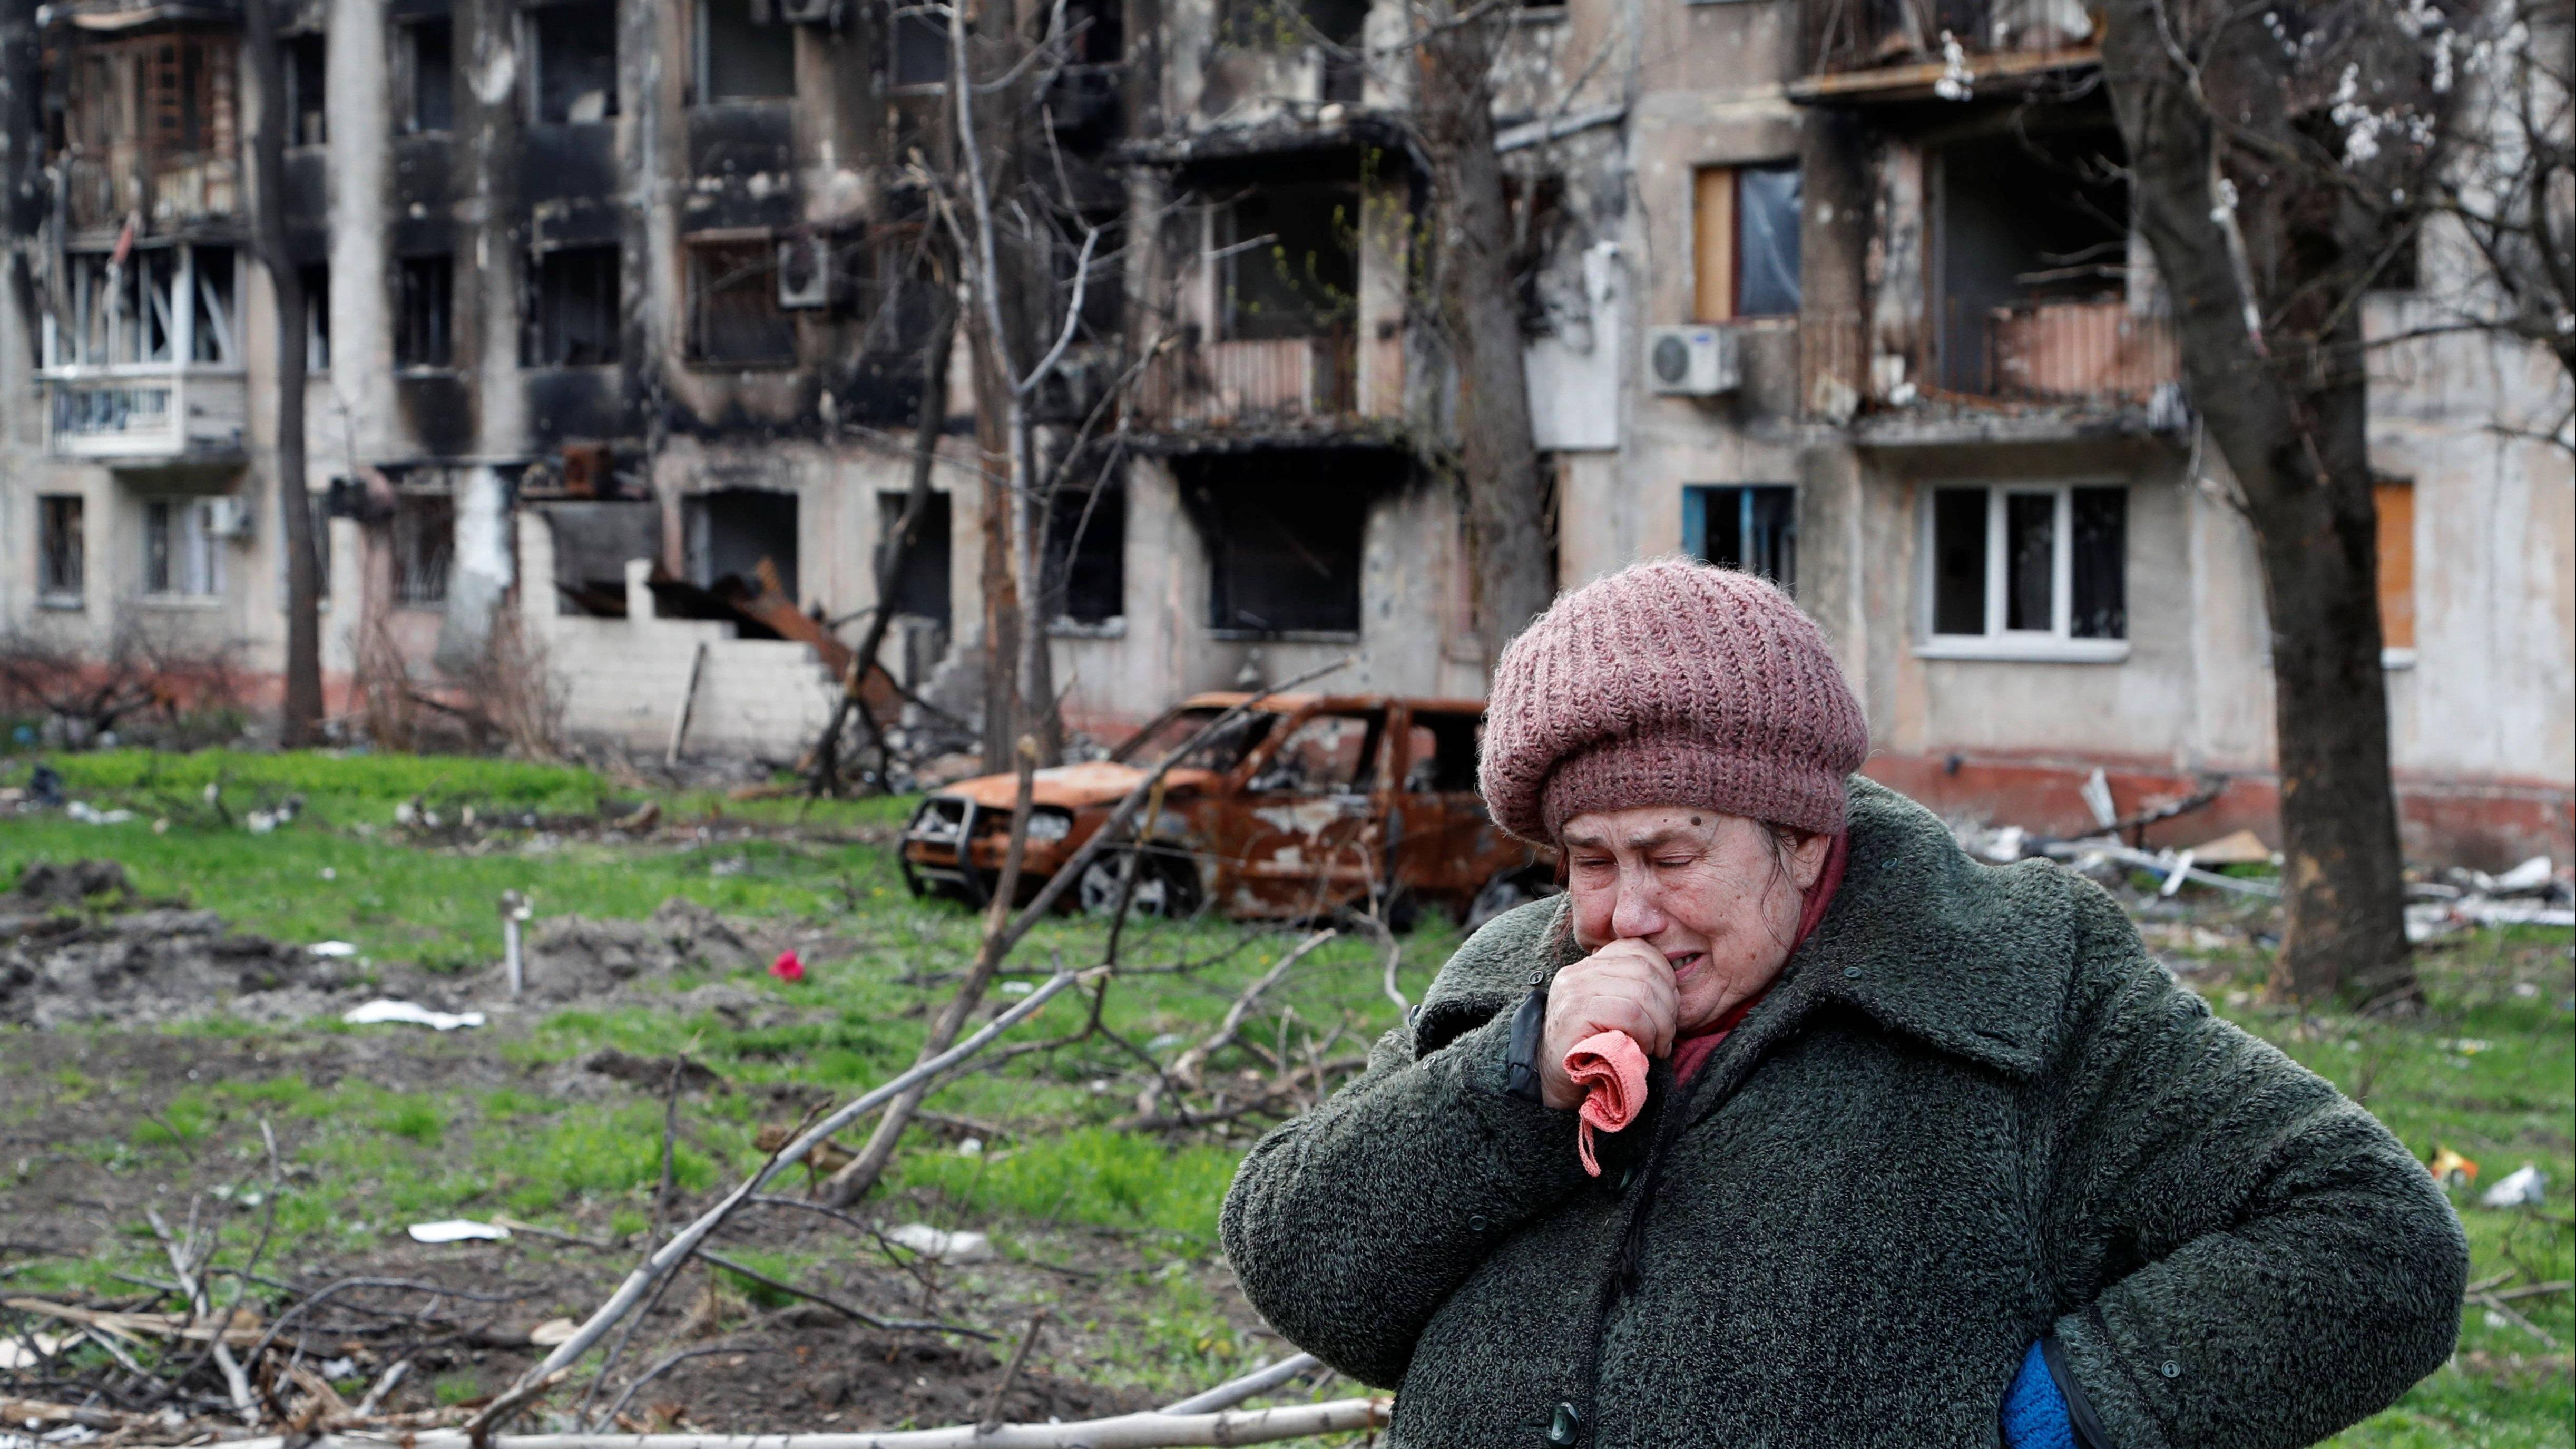 بررسی های شورای امنیت درباره موضوع بشردوستانه در اوکراینا